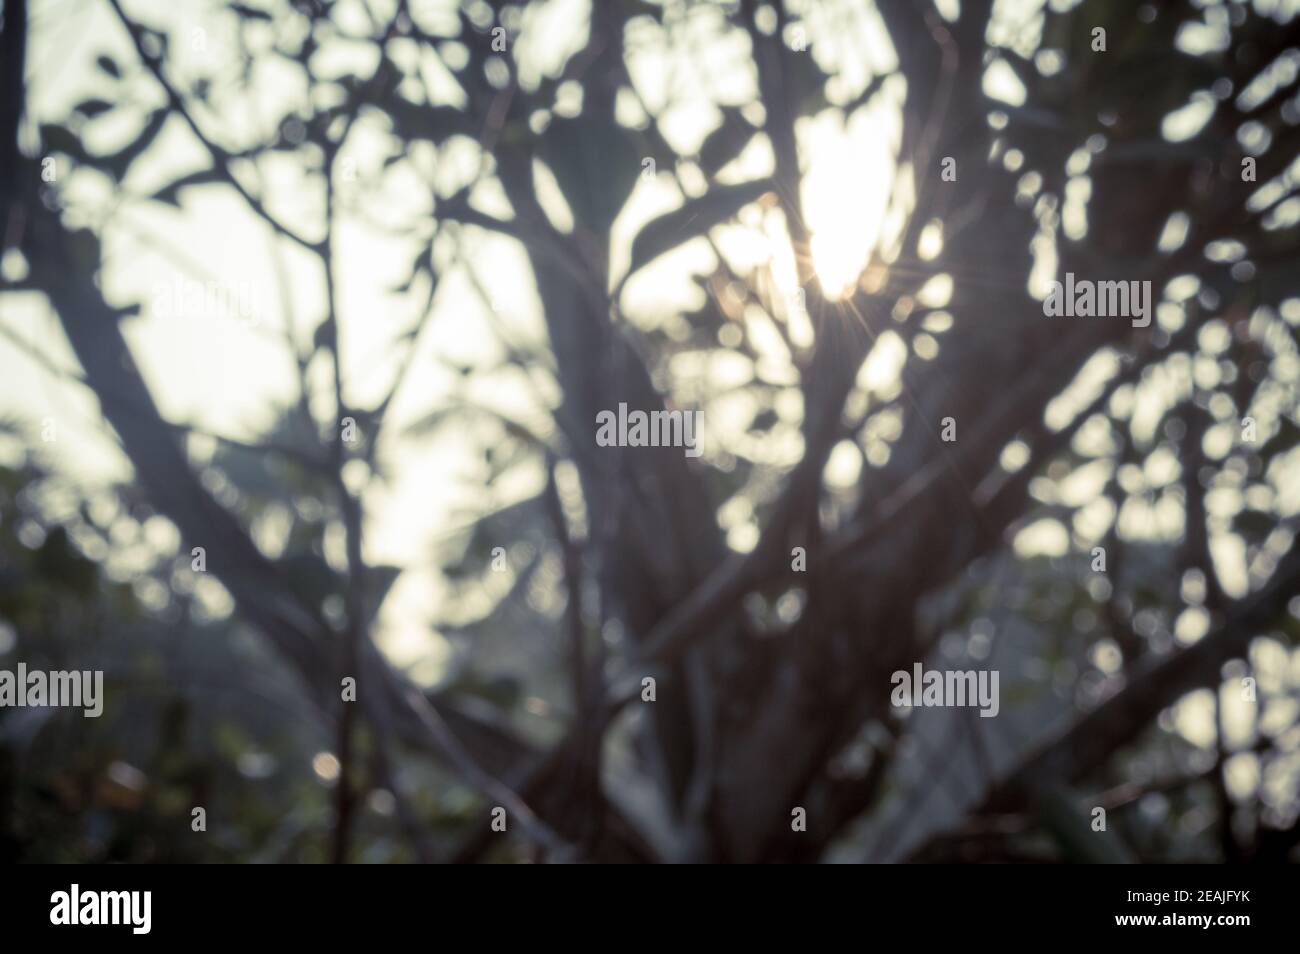 Mattina luce del sole attraverso le foglie dell'albero. Blur Forest Bush terreno boscoso nella silhouette in primo piano da luce posteriore chiaro fascio di sole. Bellezza nella natura Abstract tema immagine di sfondo. Spazio di copia. Foto Stock